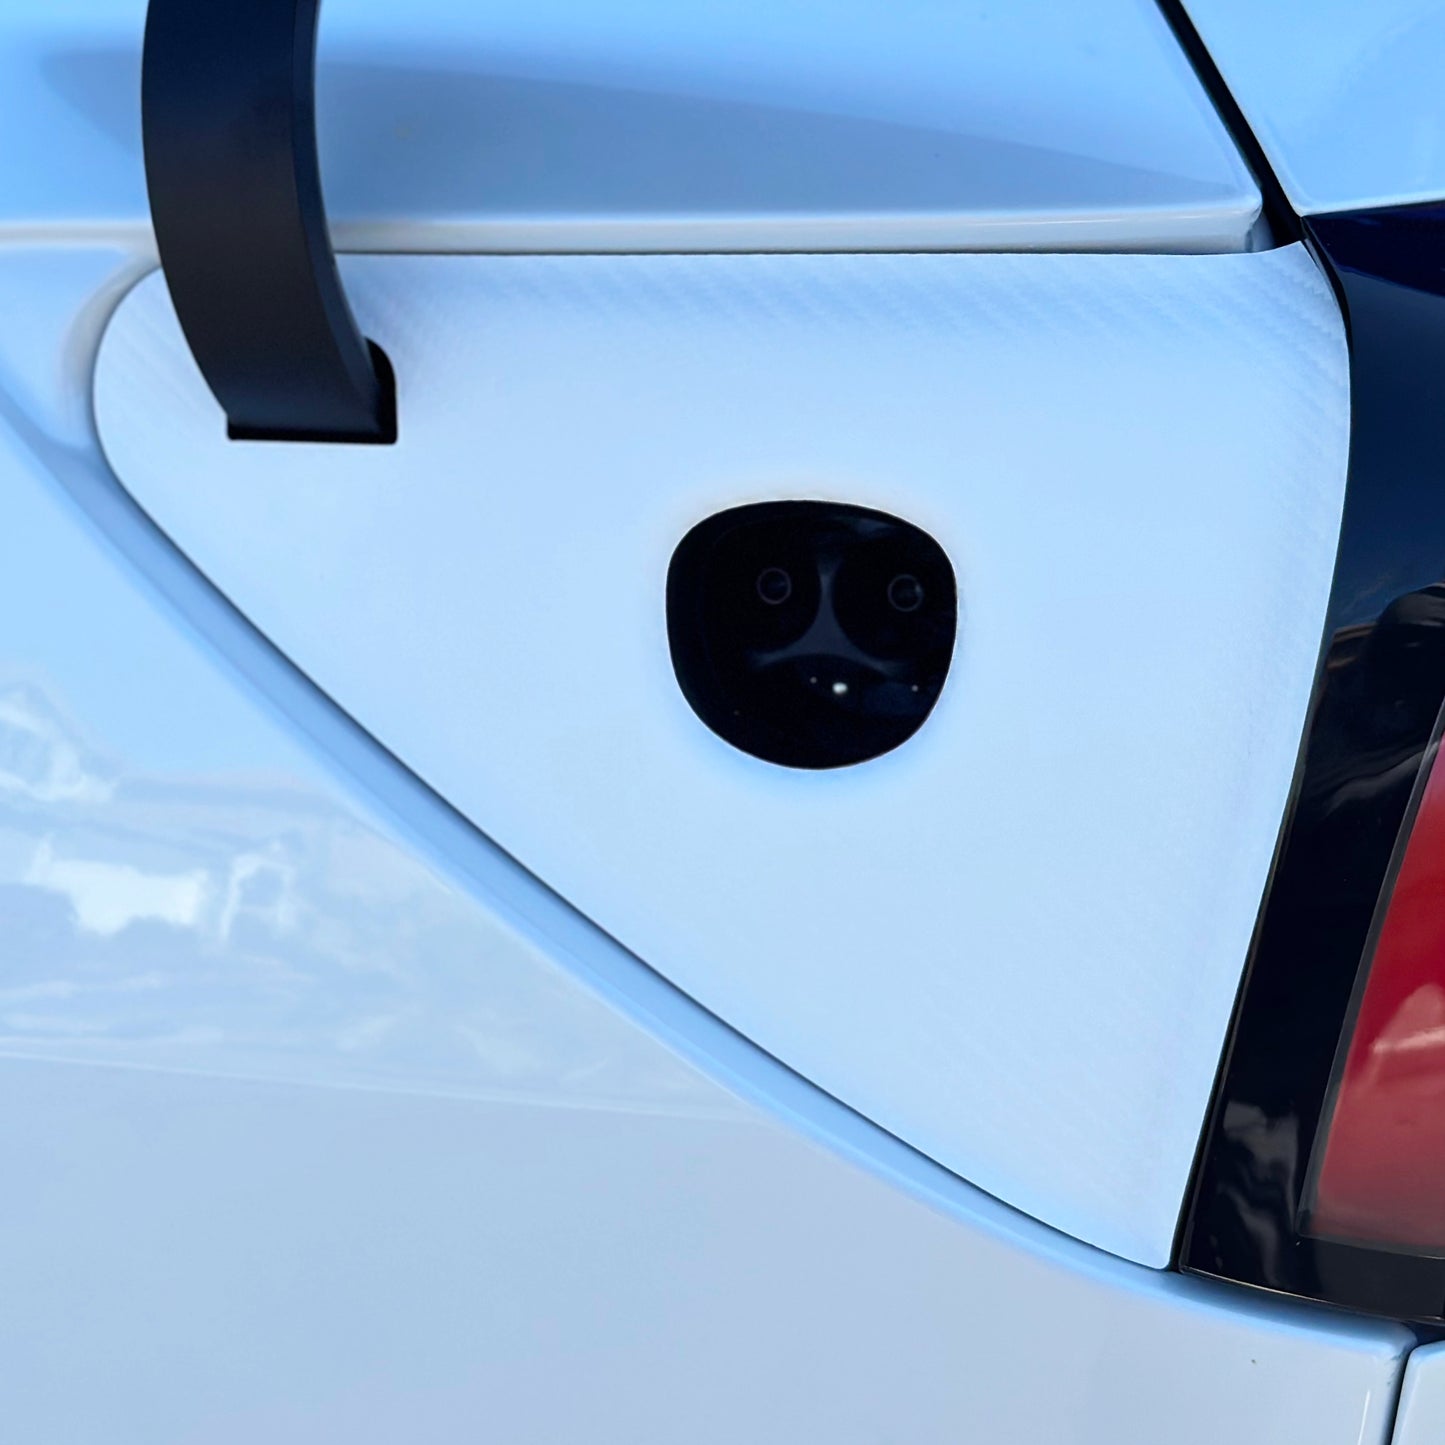 Charge Port Vinyl Wrap for Tesla Model 3 Highland - Carbon Fiber